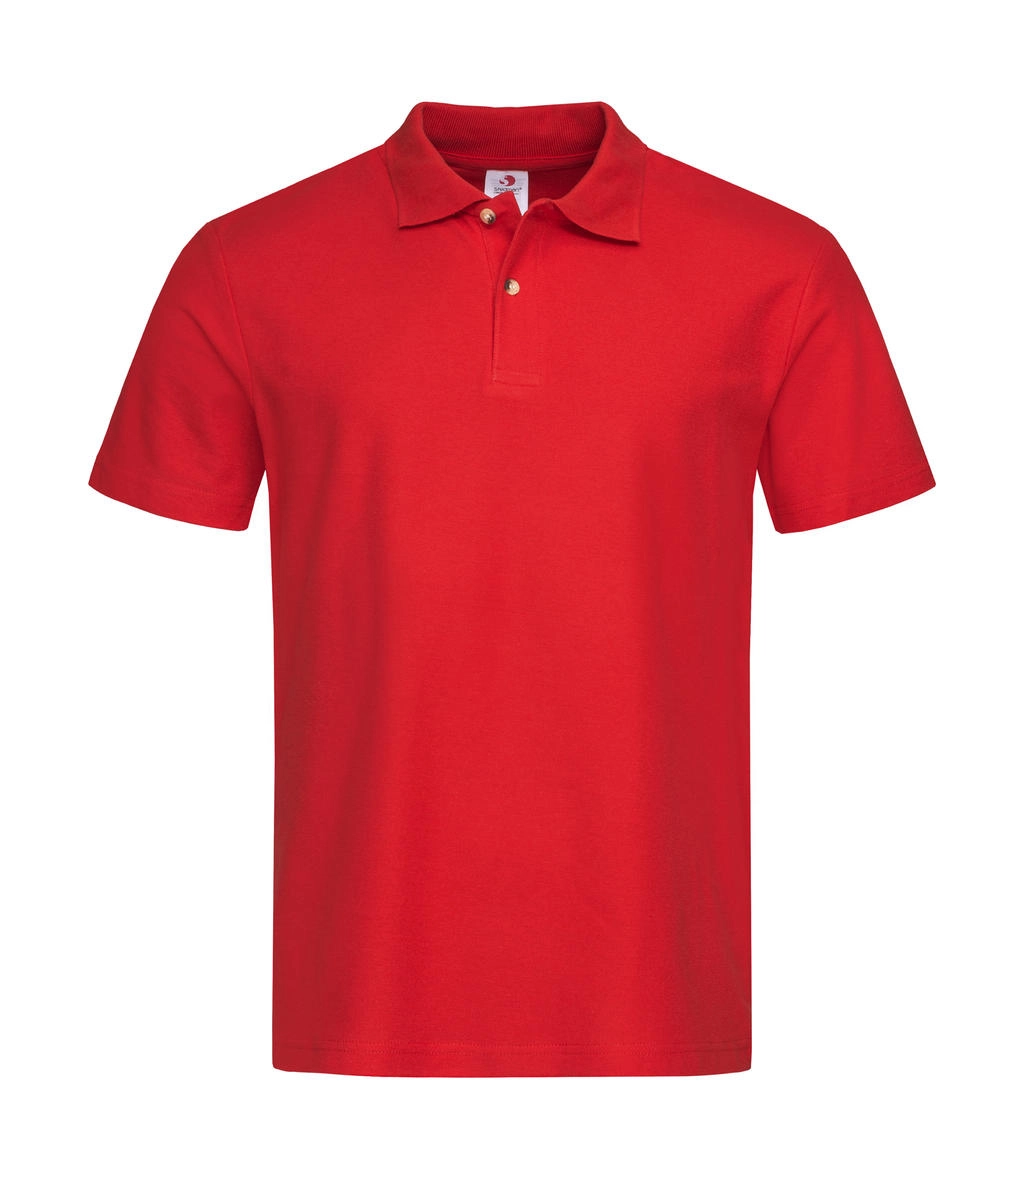 Polo zum Besticken und Bedrucken in der Farbe Scarlet Red mit Ihren Logo, Schriftzug oder Motiv.